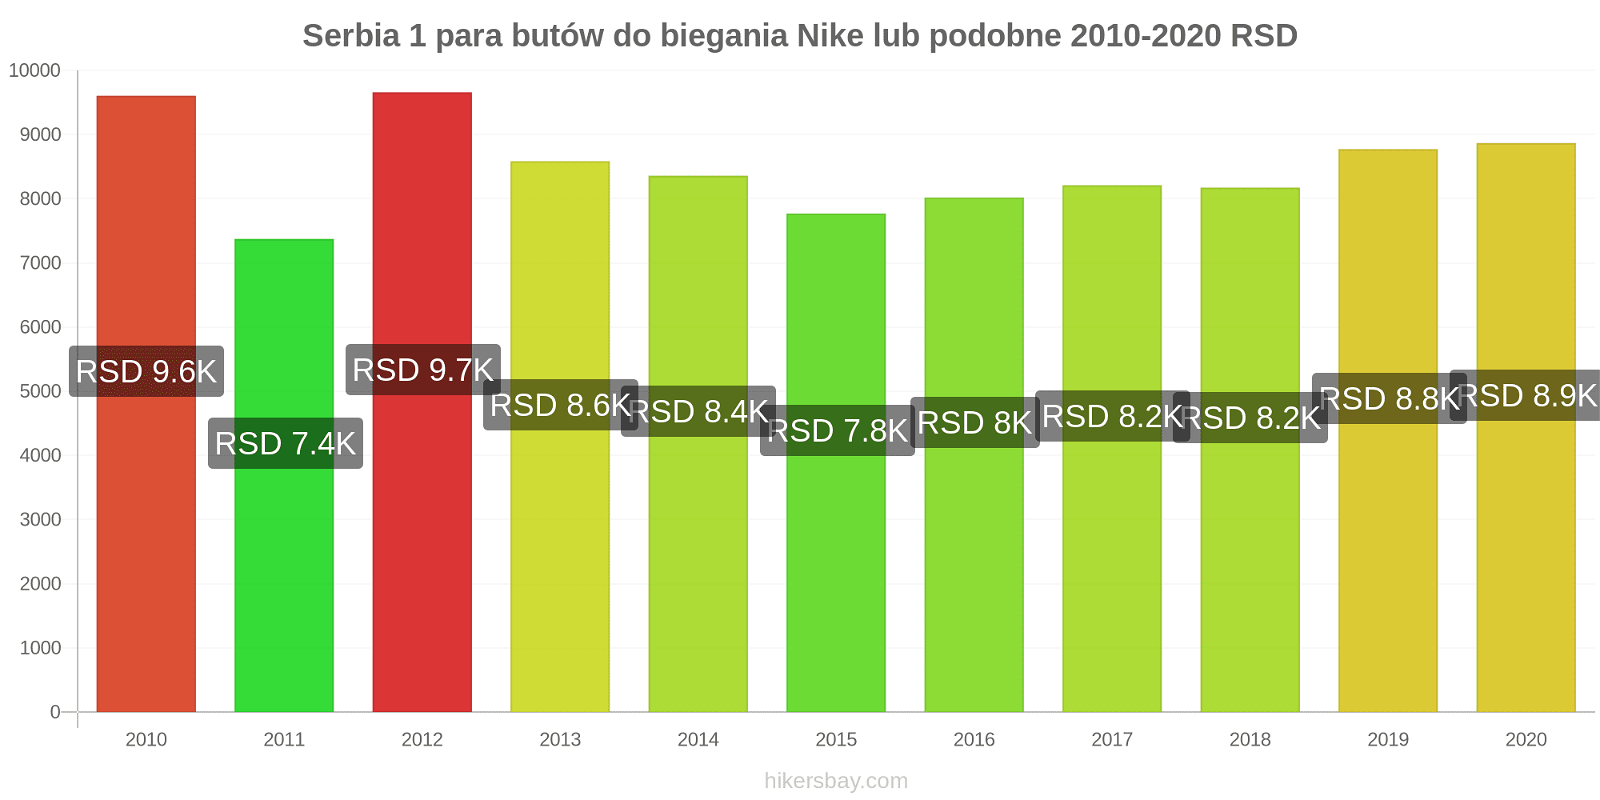 Serbia zmiany cen 1 para butów do biegania Nike lub podobne hikersbay.com